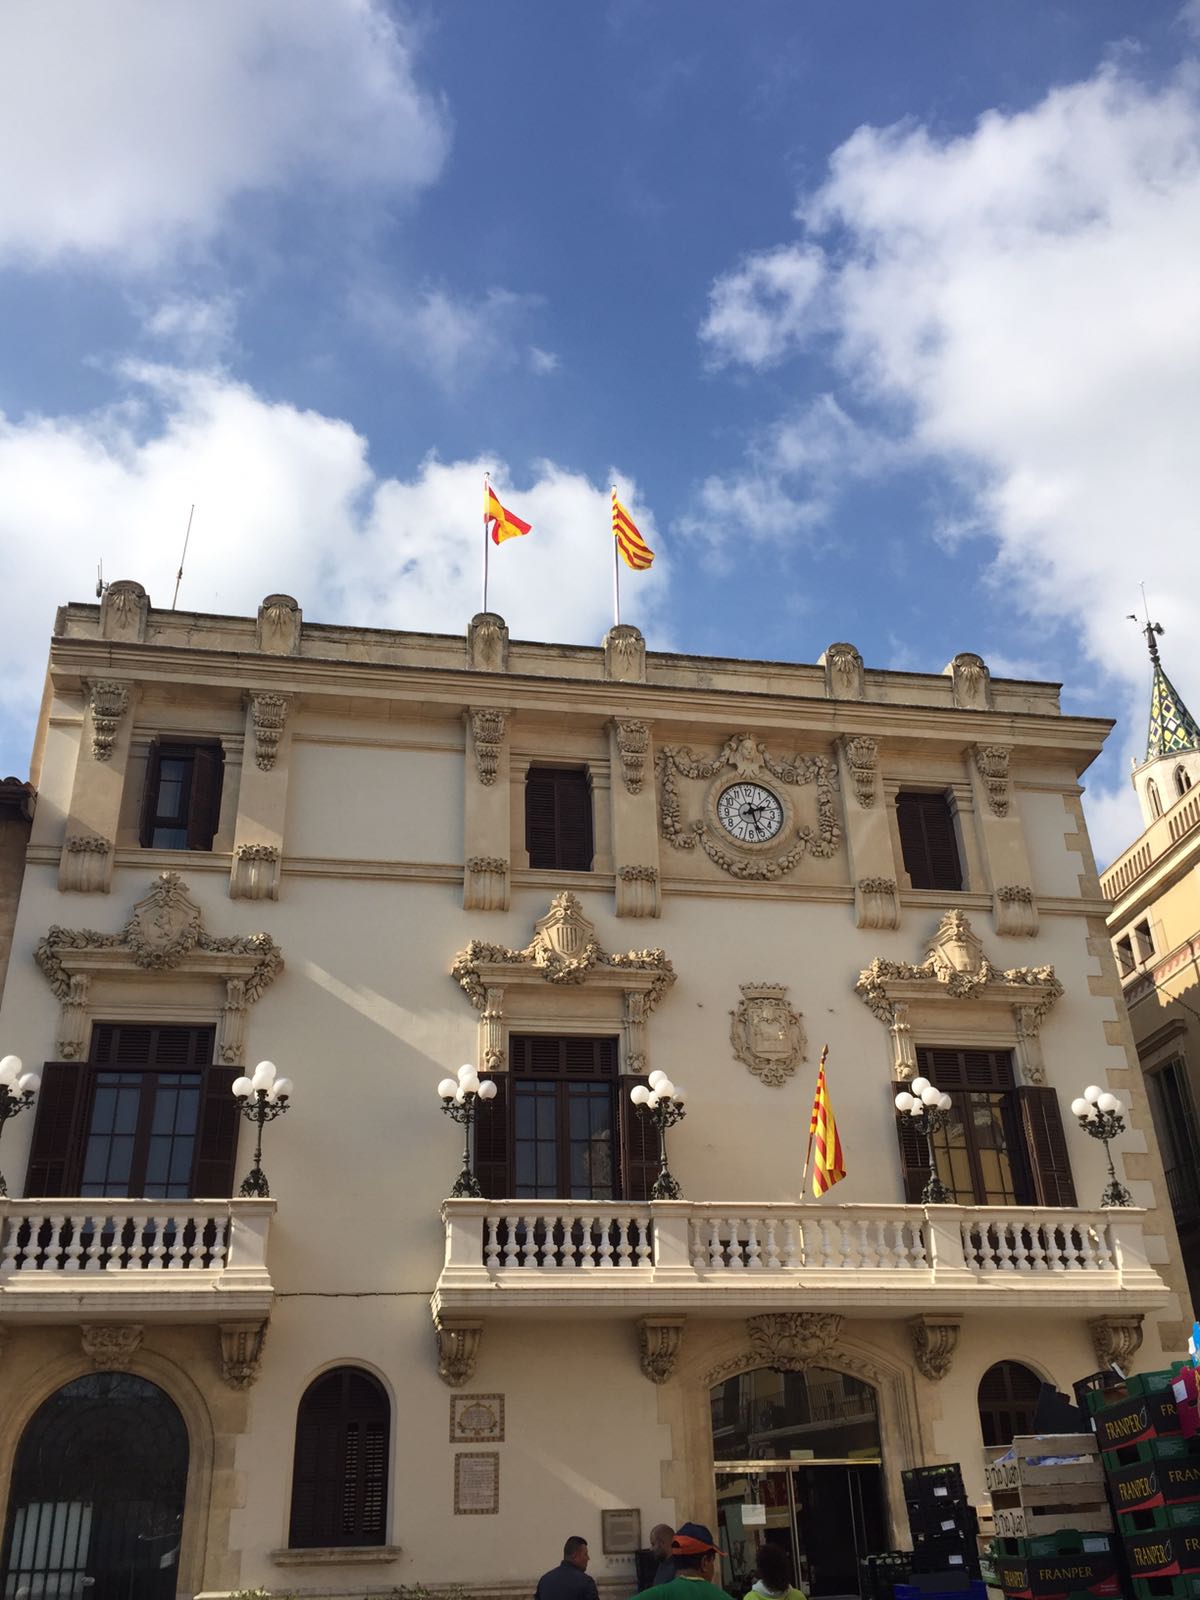 Vilafranca torna a hissar la bandera espanyola després de 20 anys